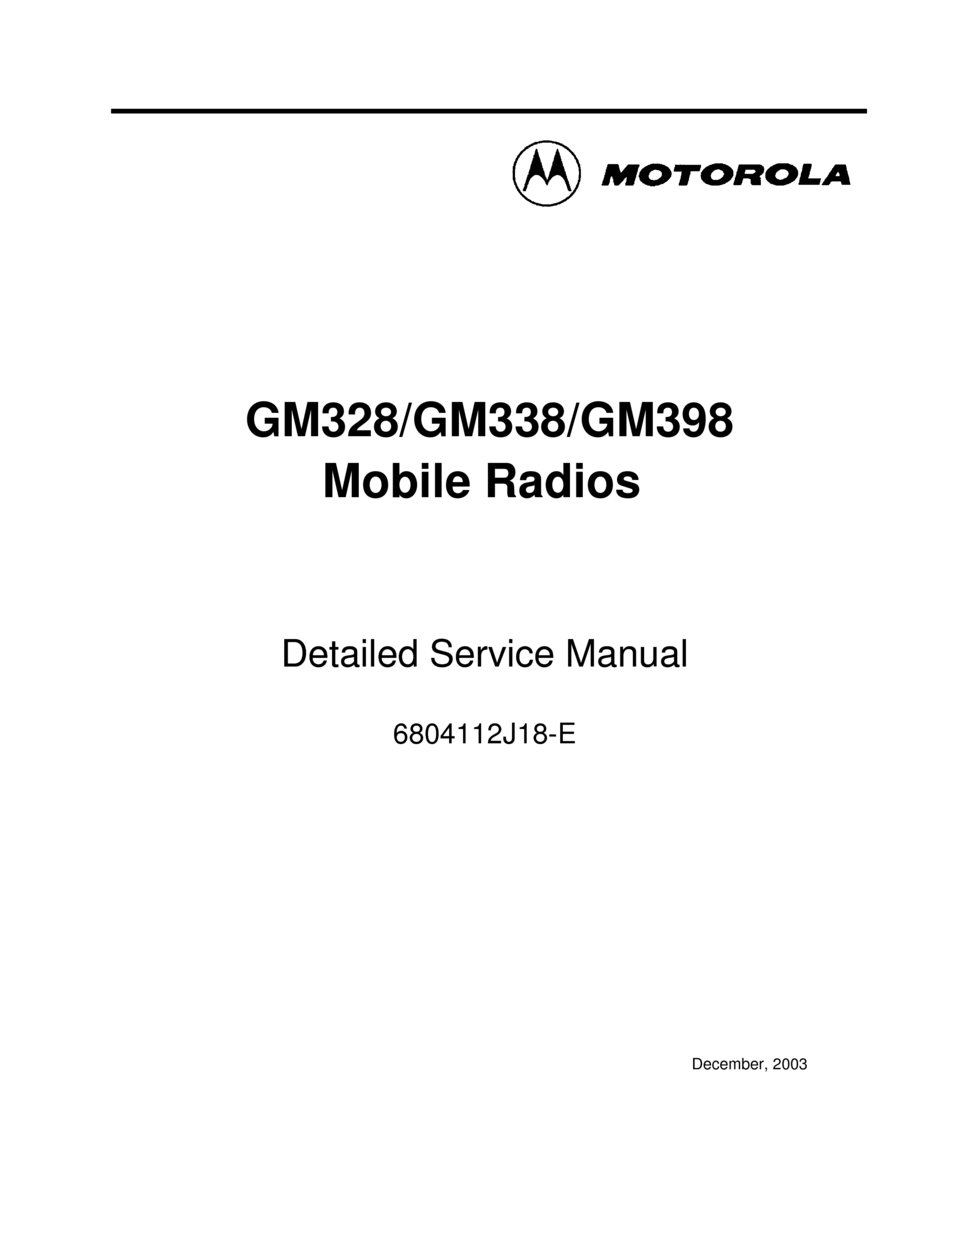 Motorola gm338 programming software